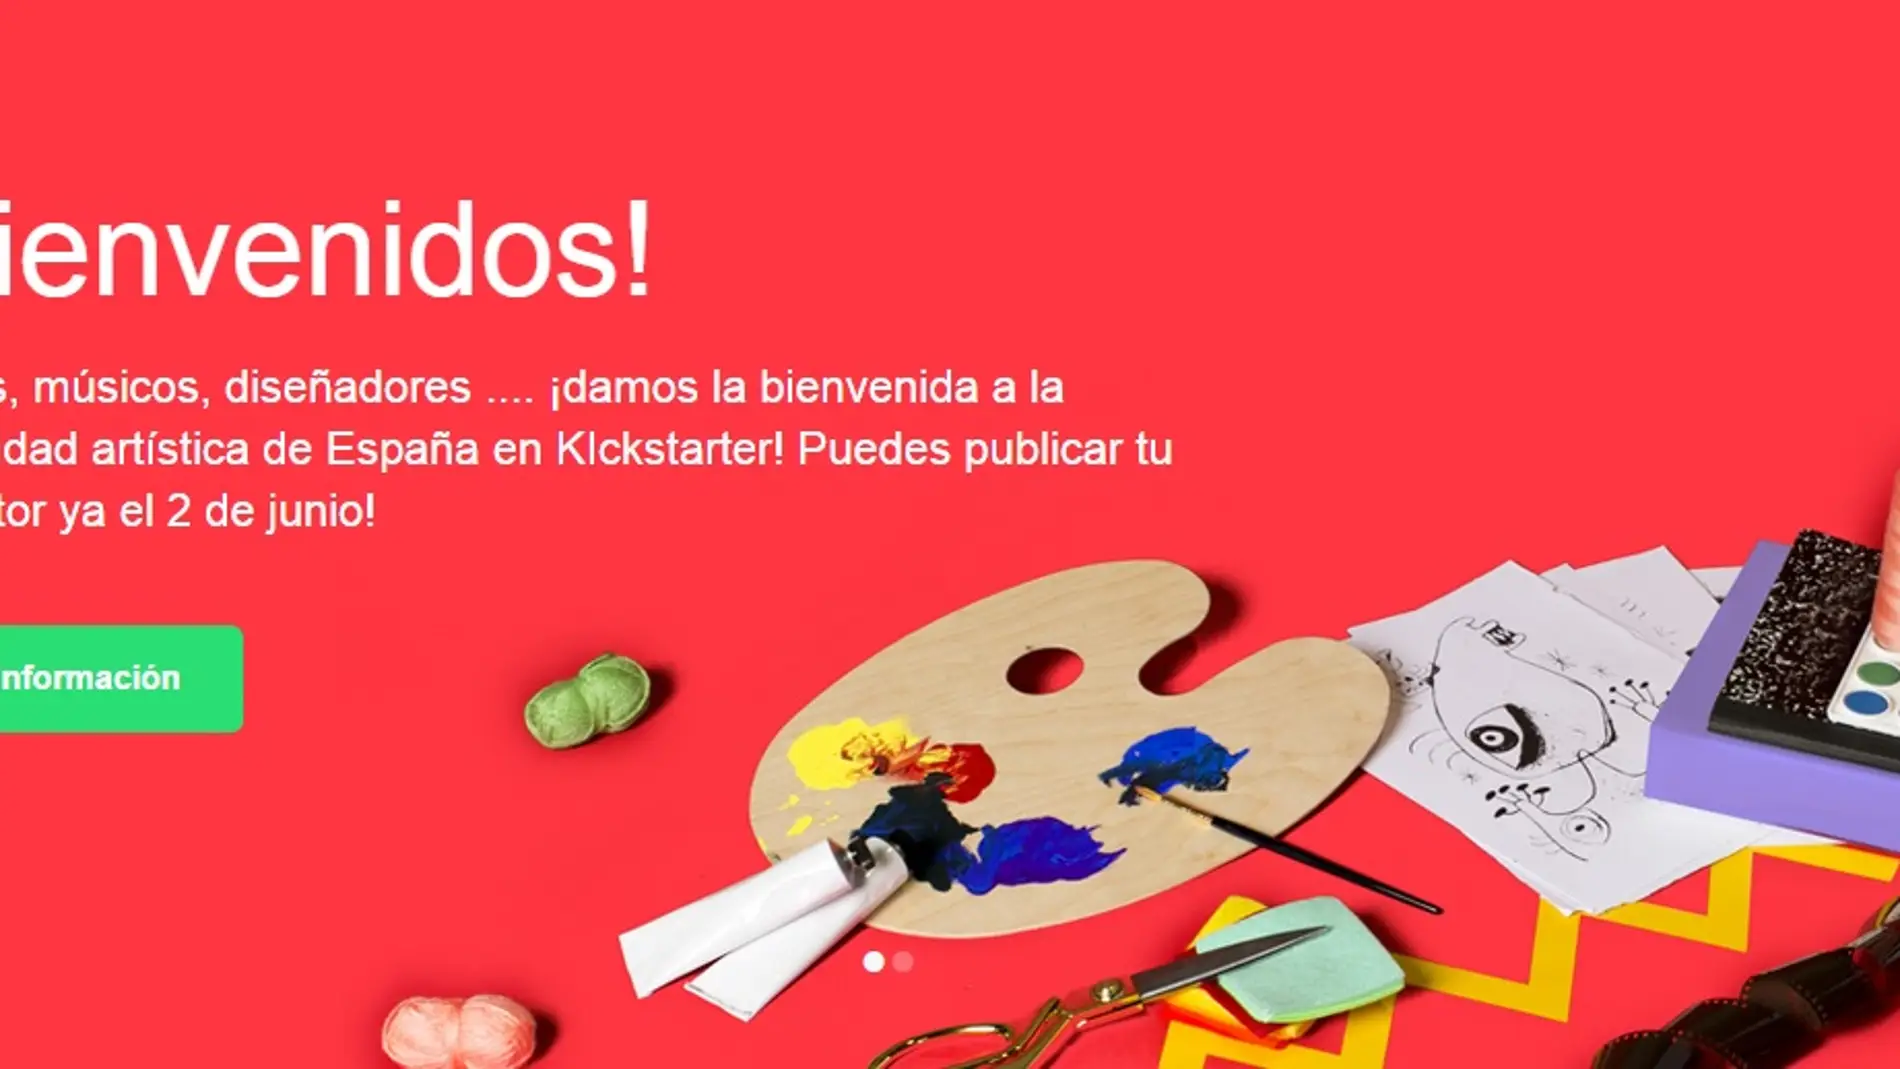 Kickstarter llega a España